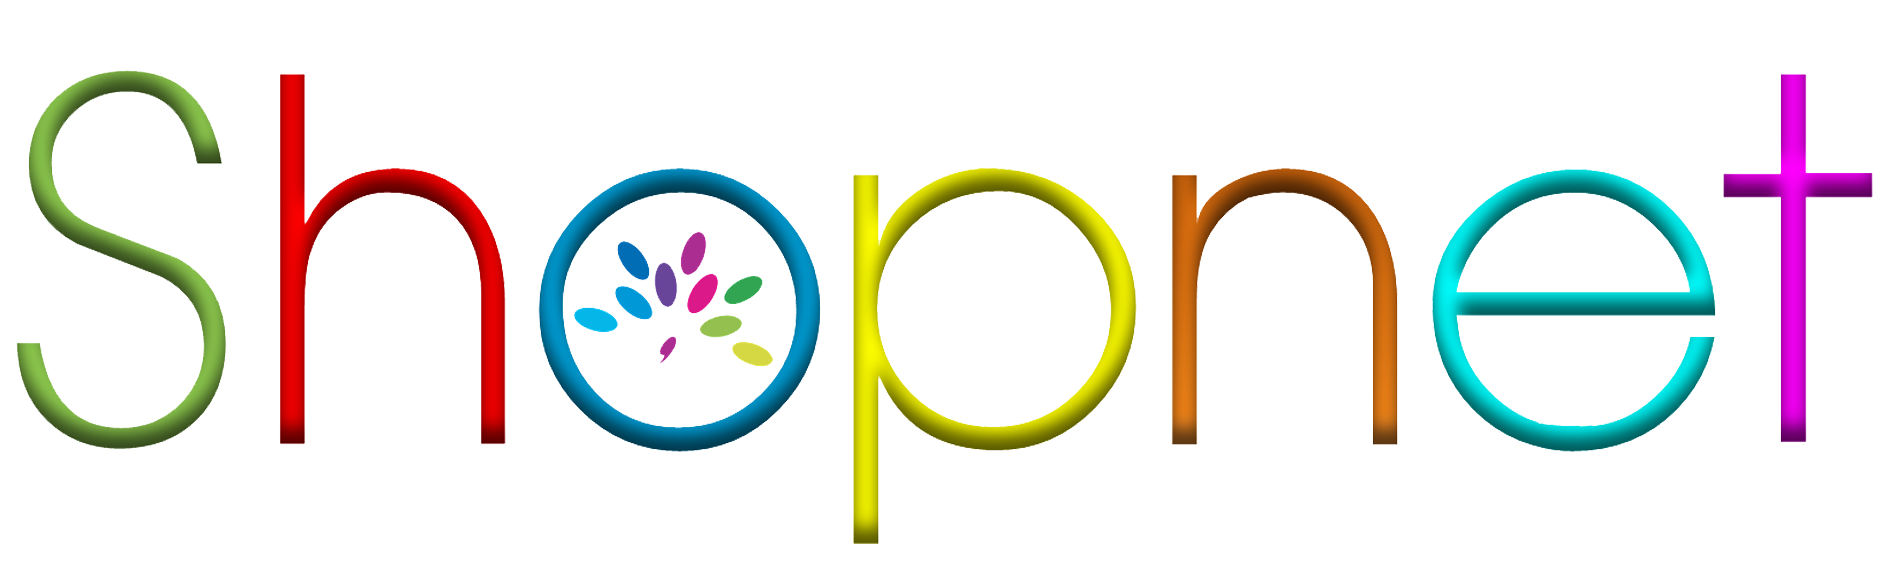 Shopnet Logo